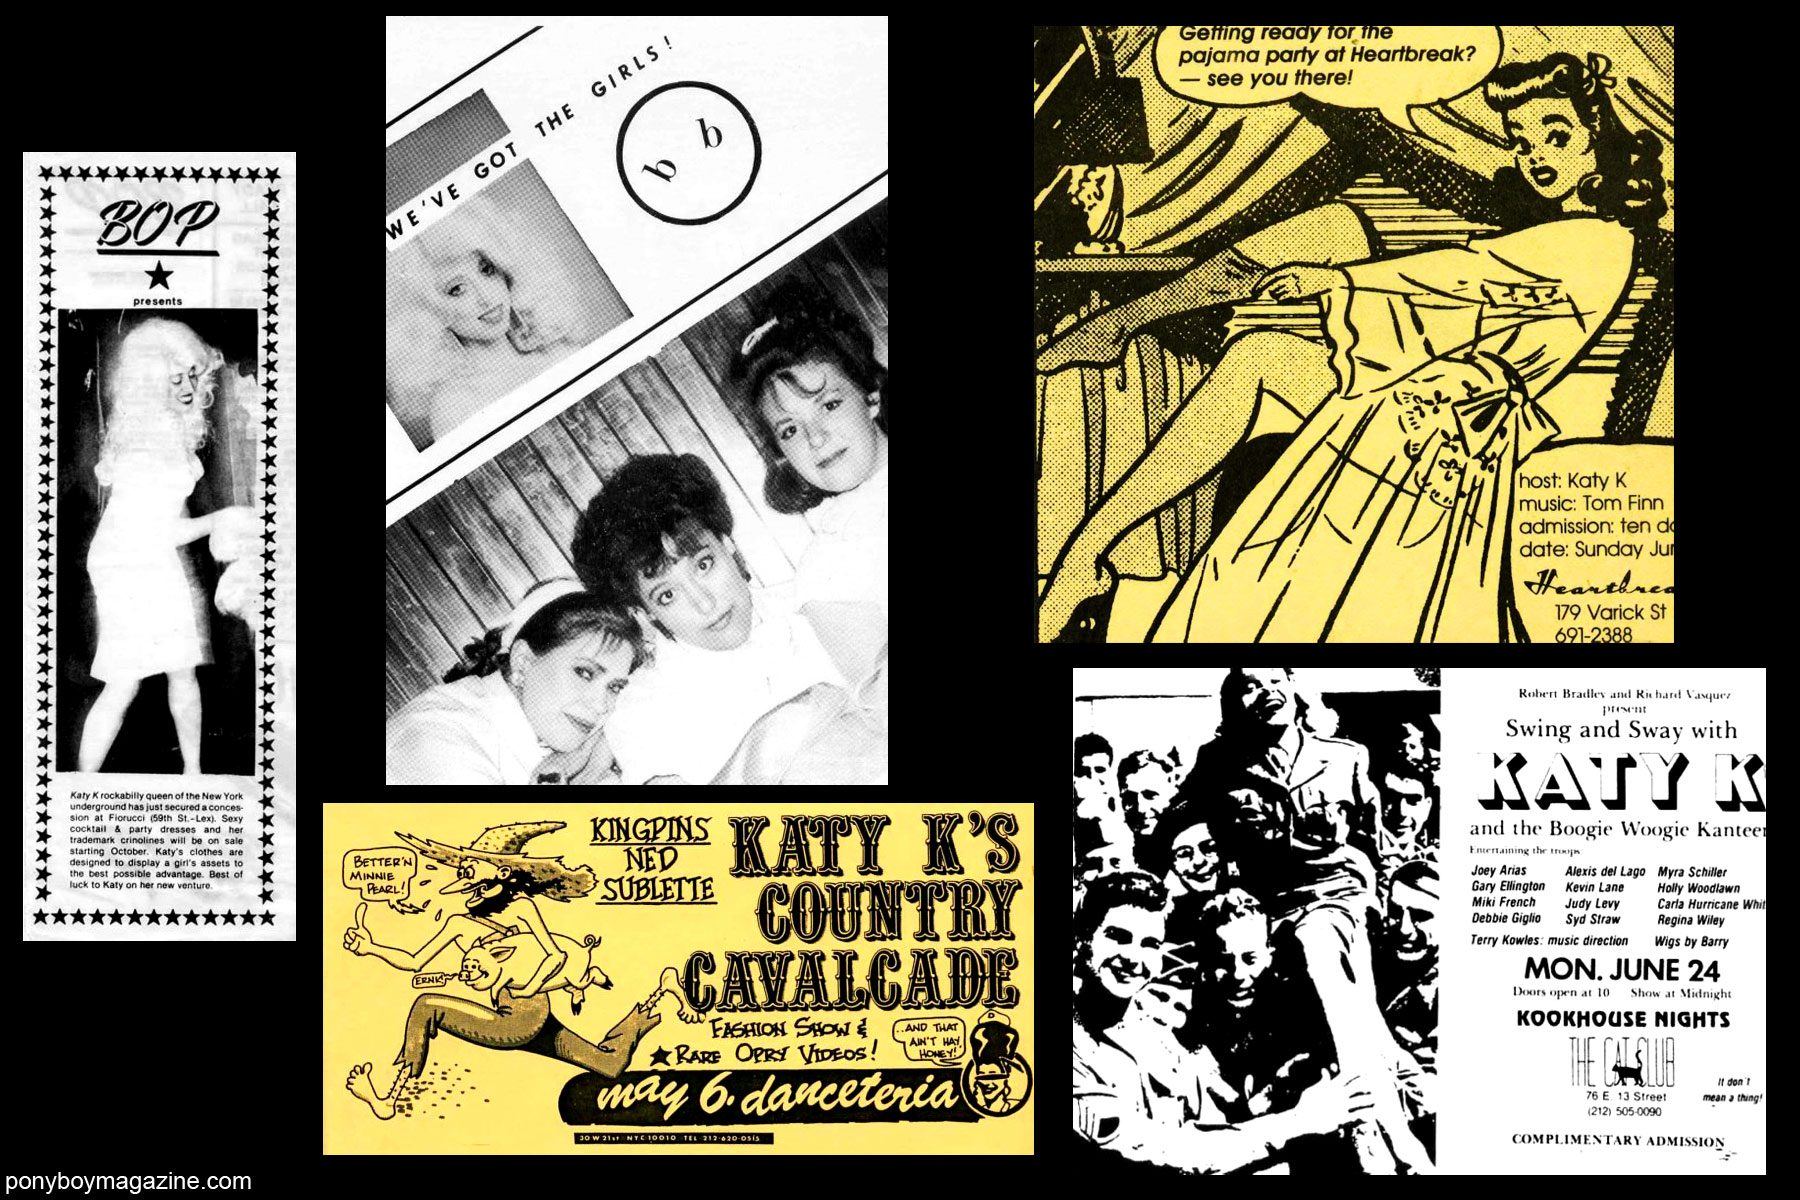 80's vintage artwork of Katy K performances for Ponyboy Magazine.